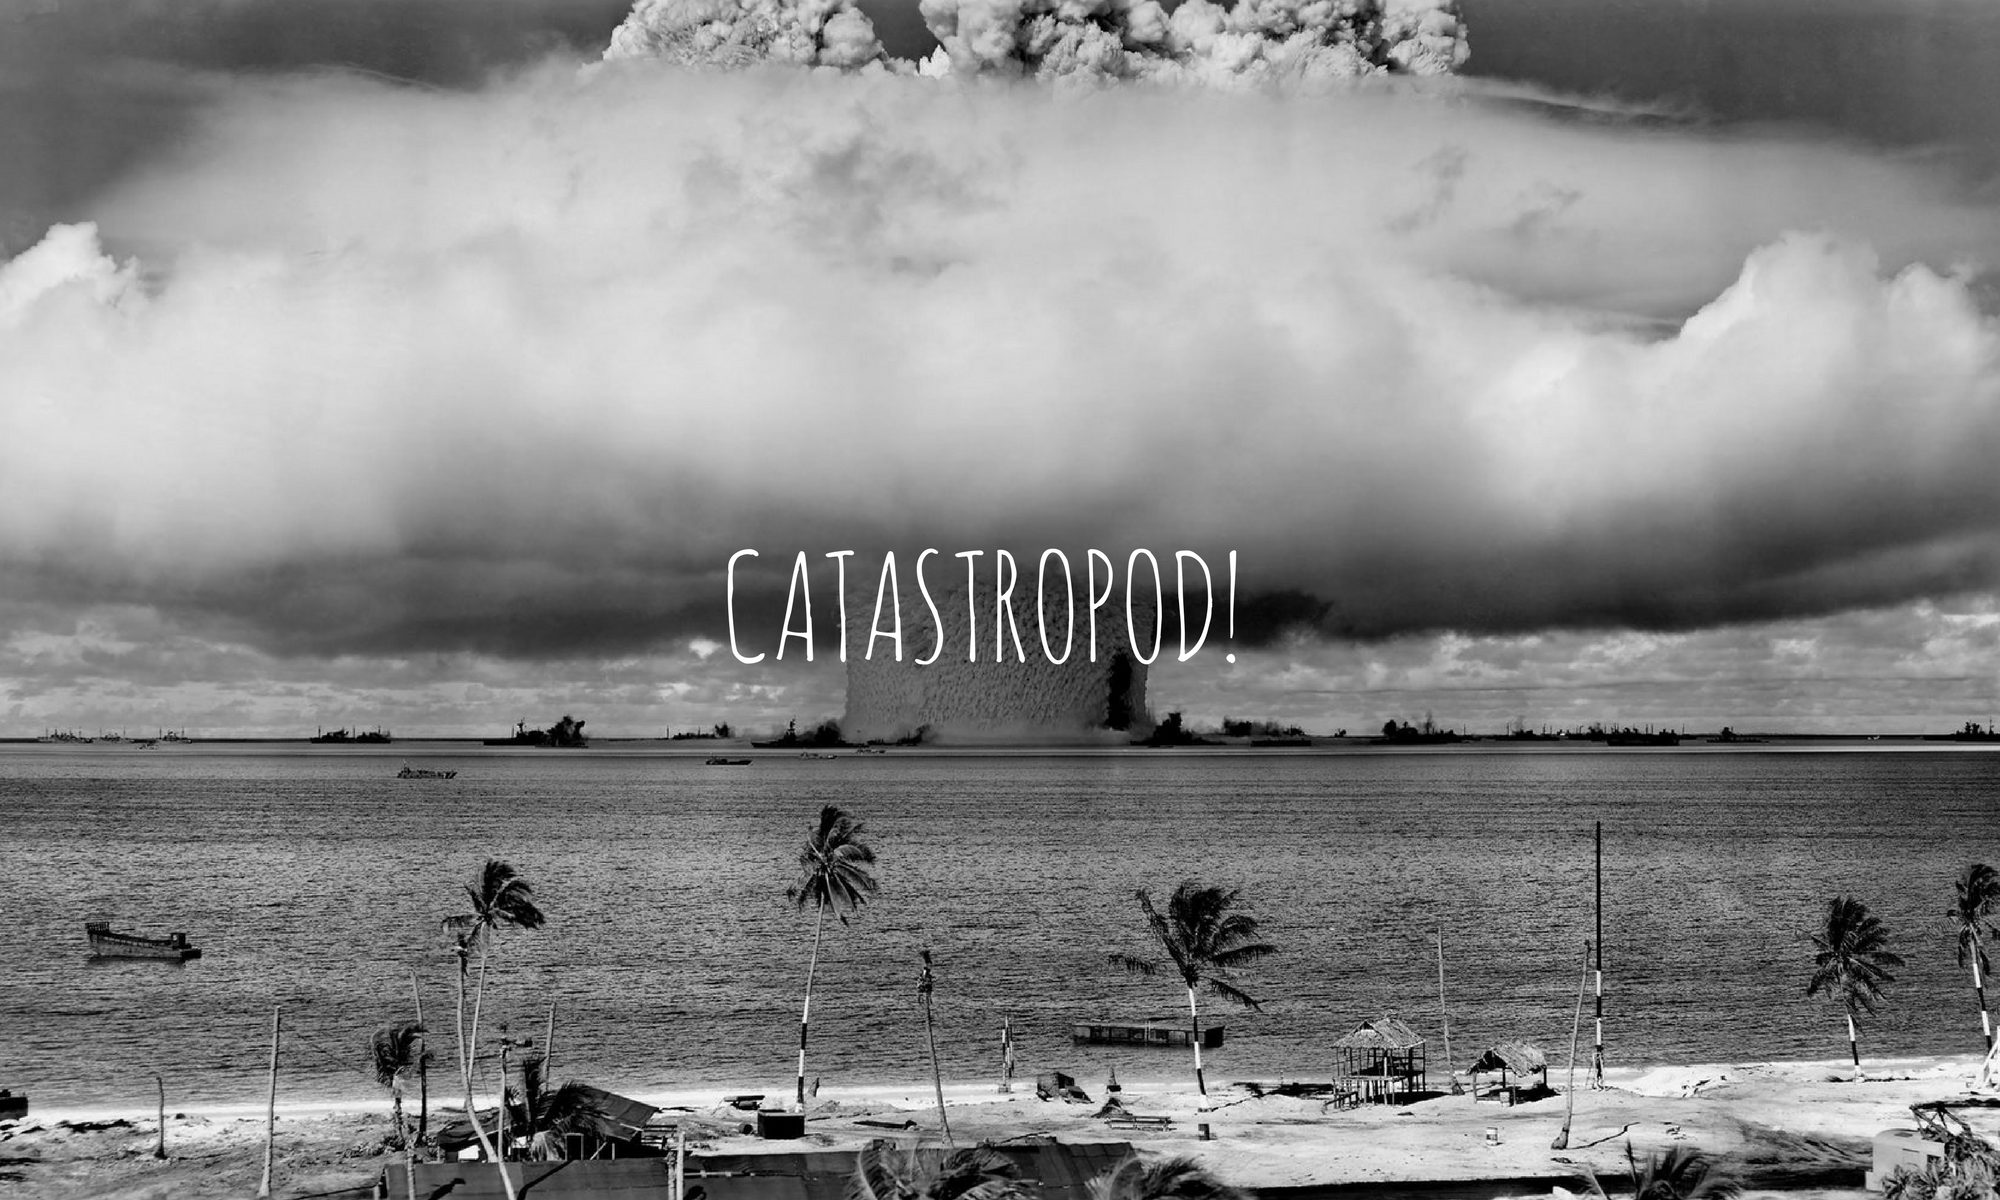 Catastropod